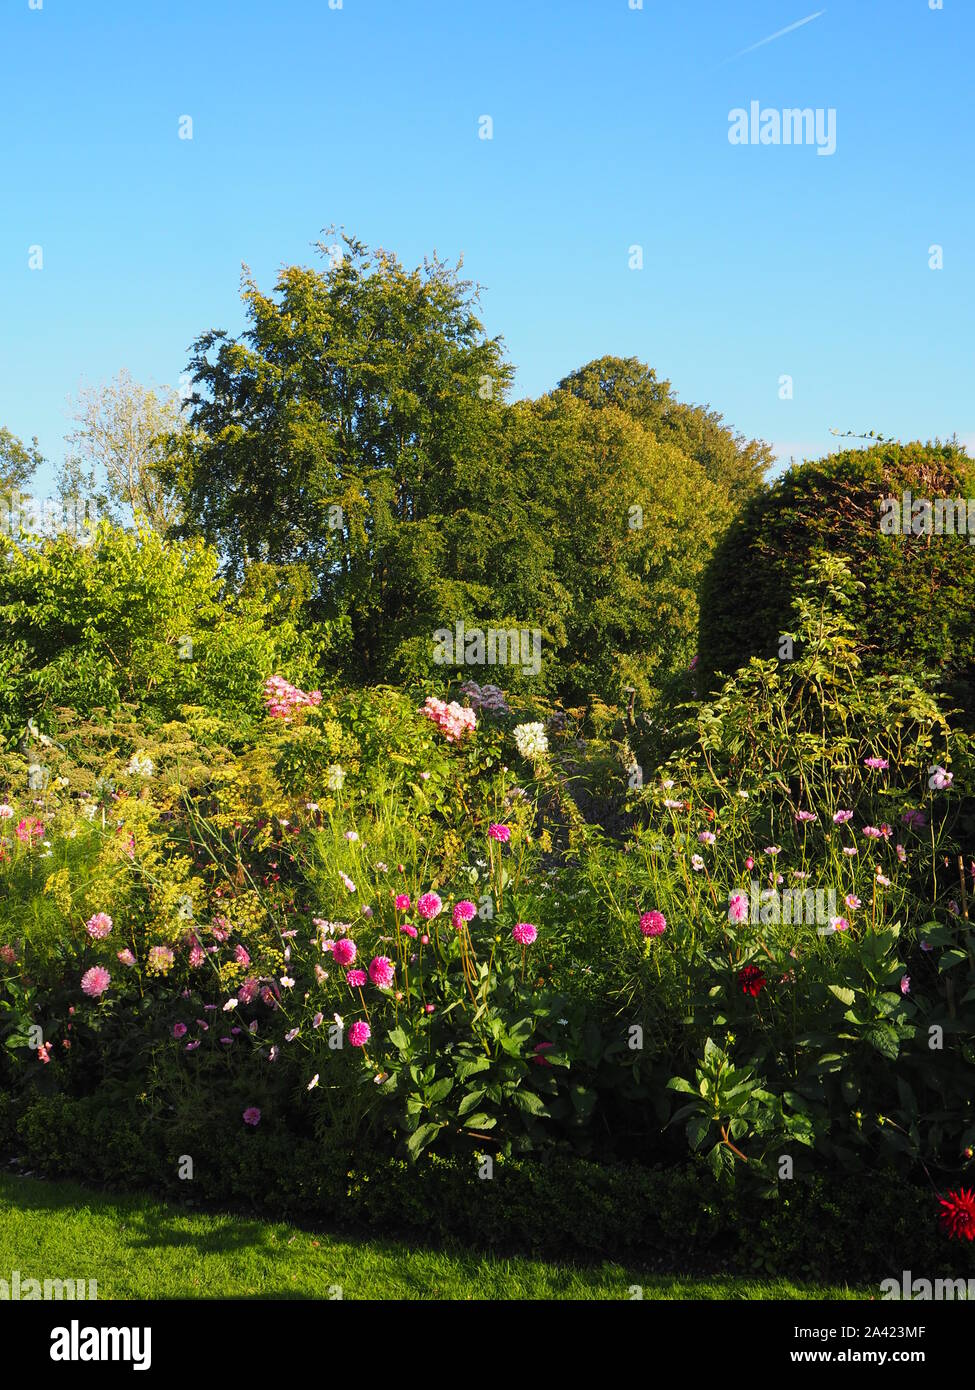 Chenies Manor Garden Staudenbeet im September Kosmos angezeigt. Dahlien in rosa Farbtönen mit Sorten von Pflanzen und Bäumen im Hintergrund. Stockfoto